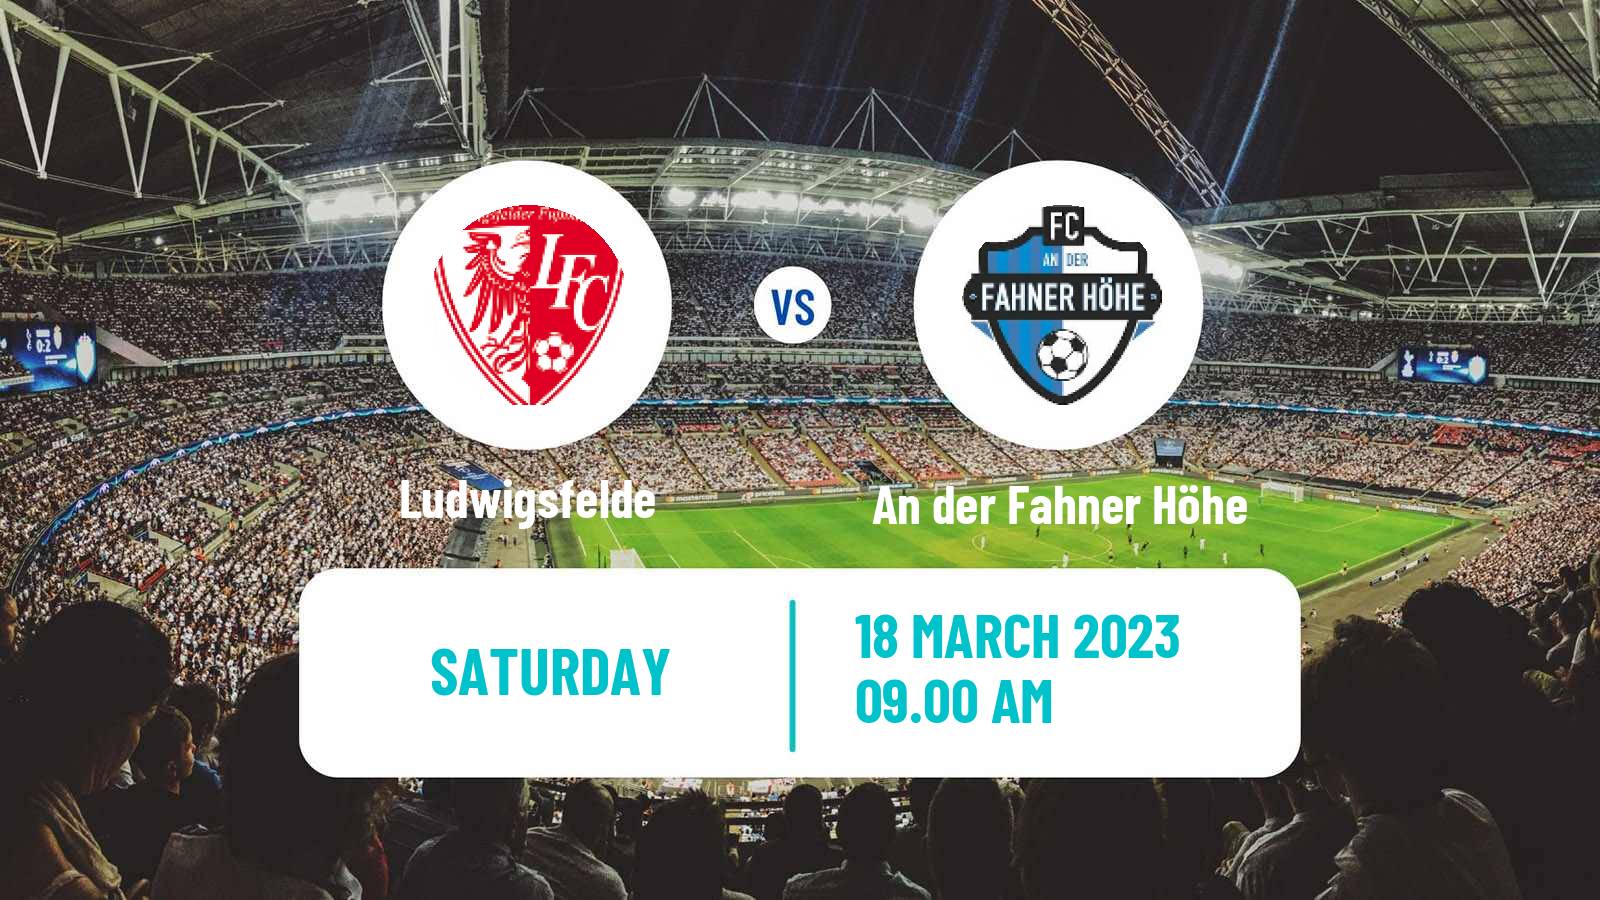 Soccer German Oberliga NOFV- Süd Ludwigsfelde - An der Fahner Höhe